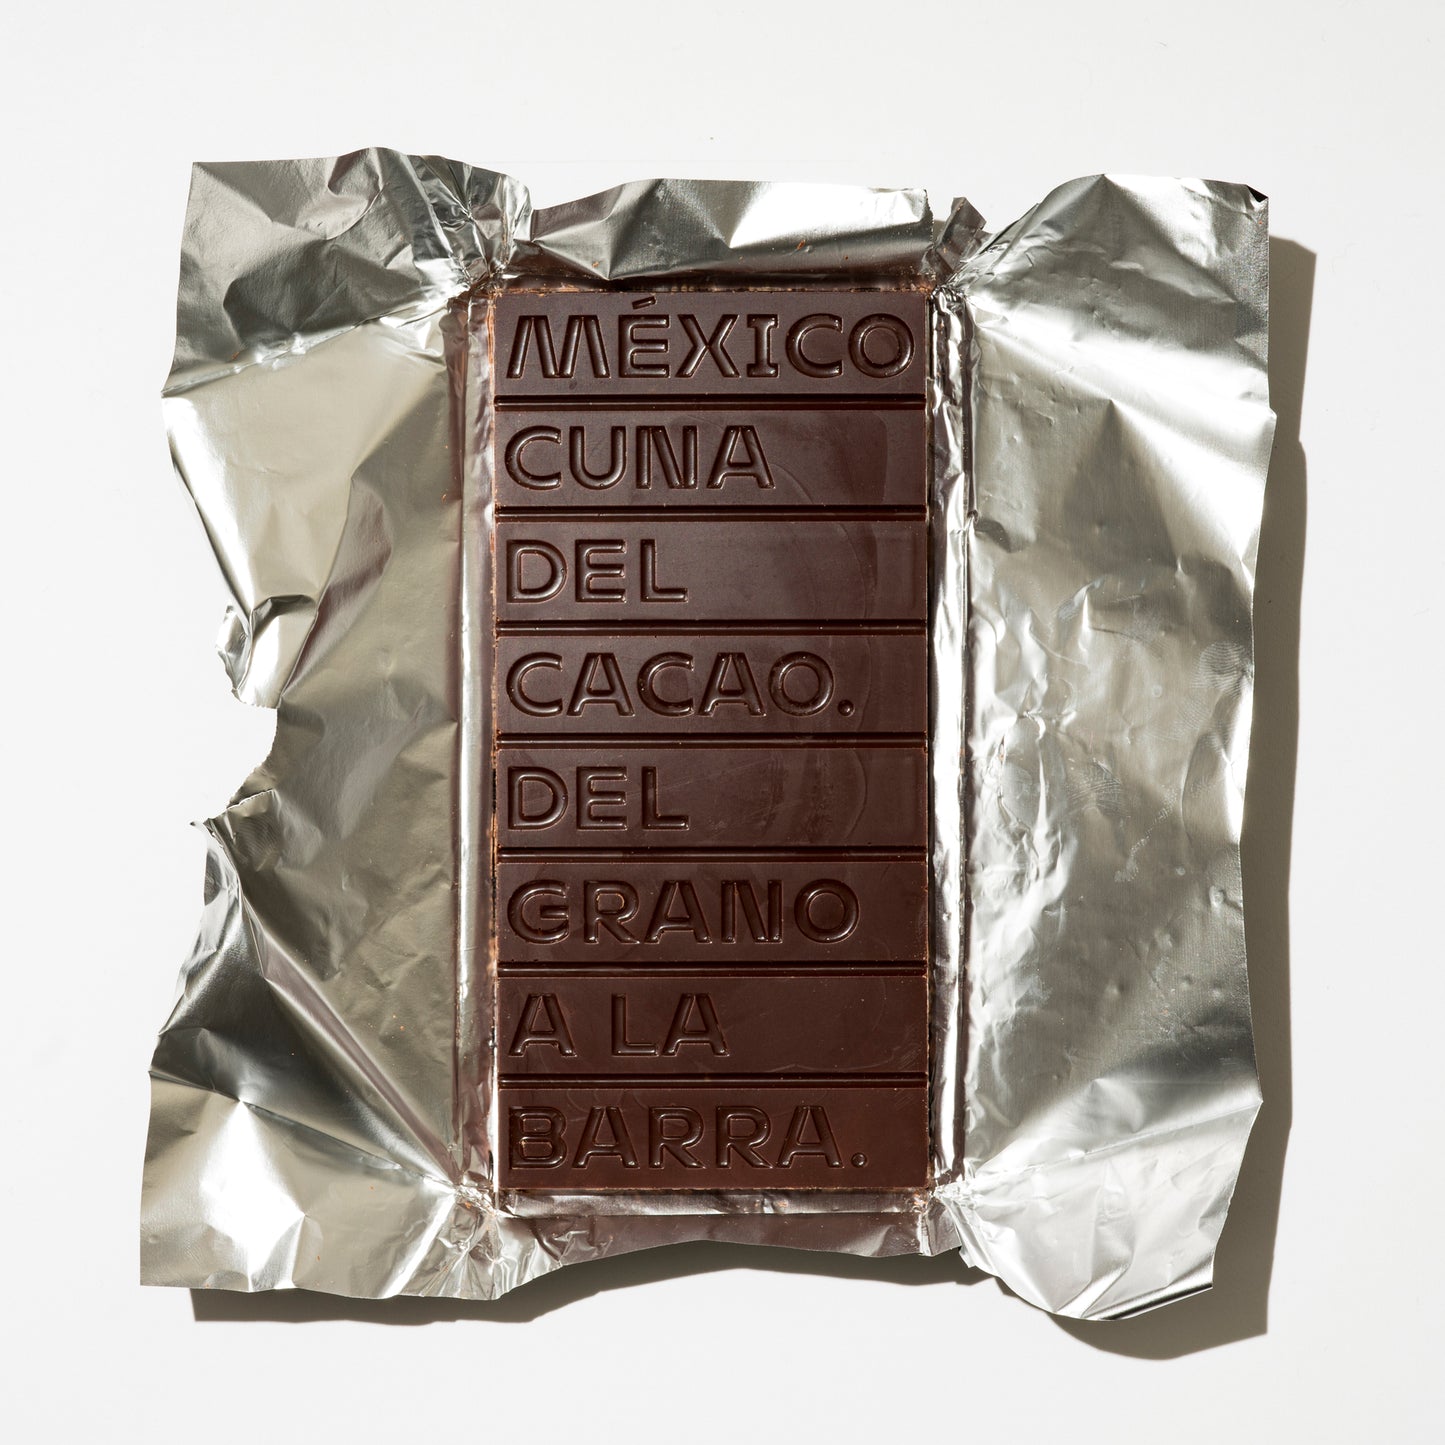 73% Cacao de Comalcalco con GRANOS DE CAFÉ